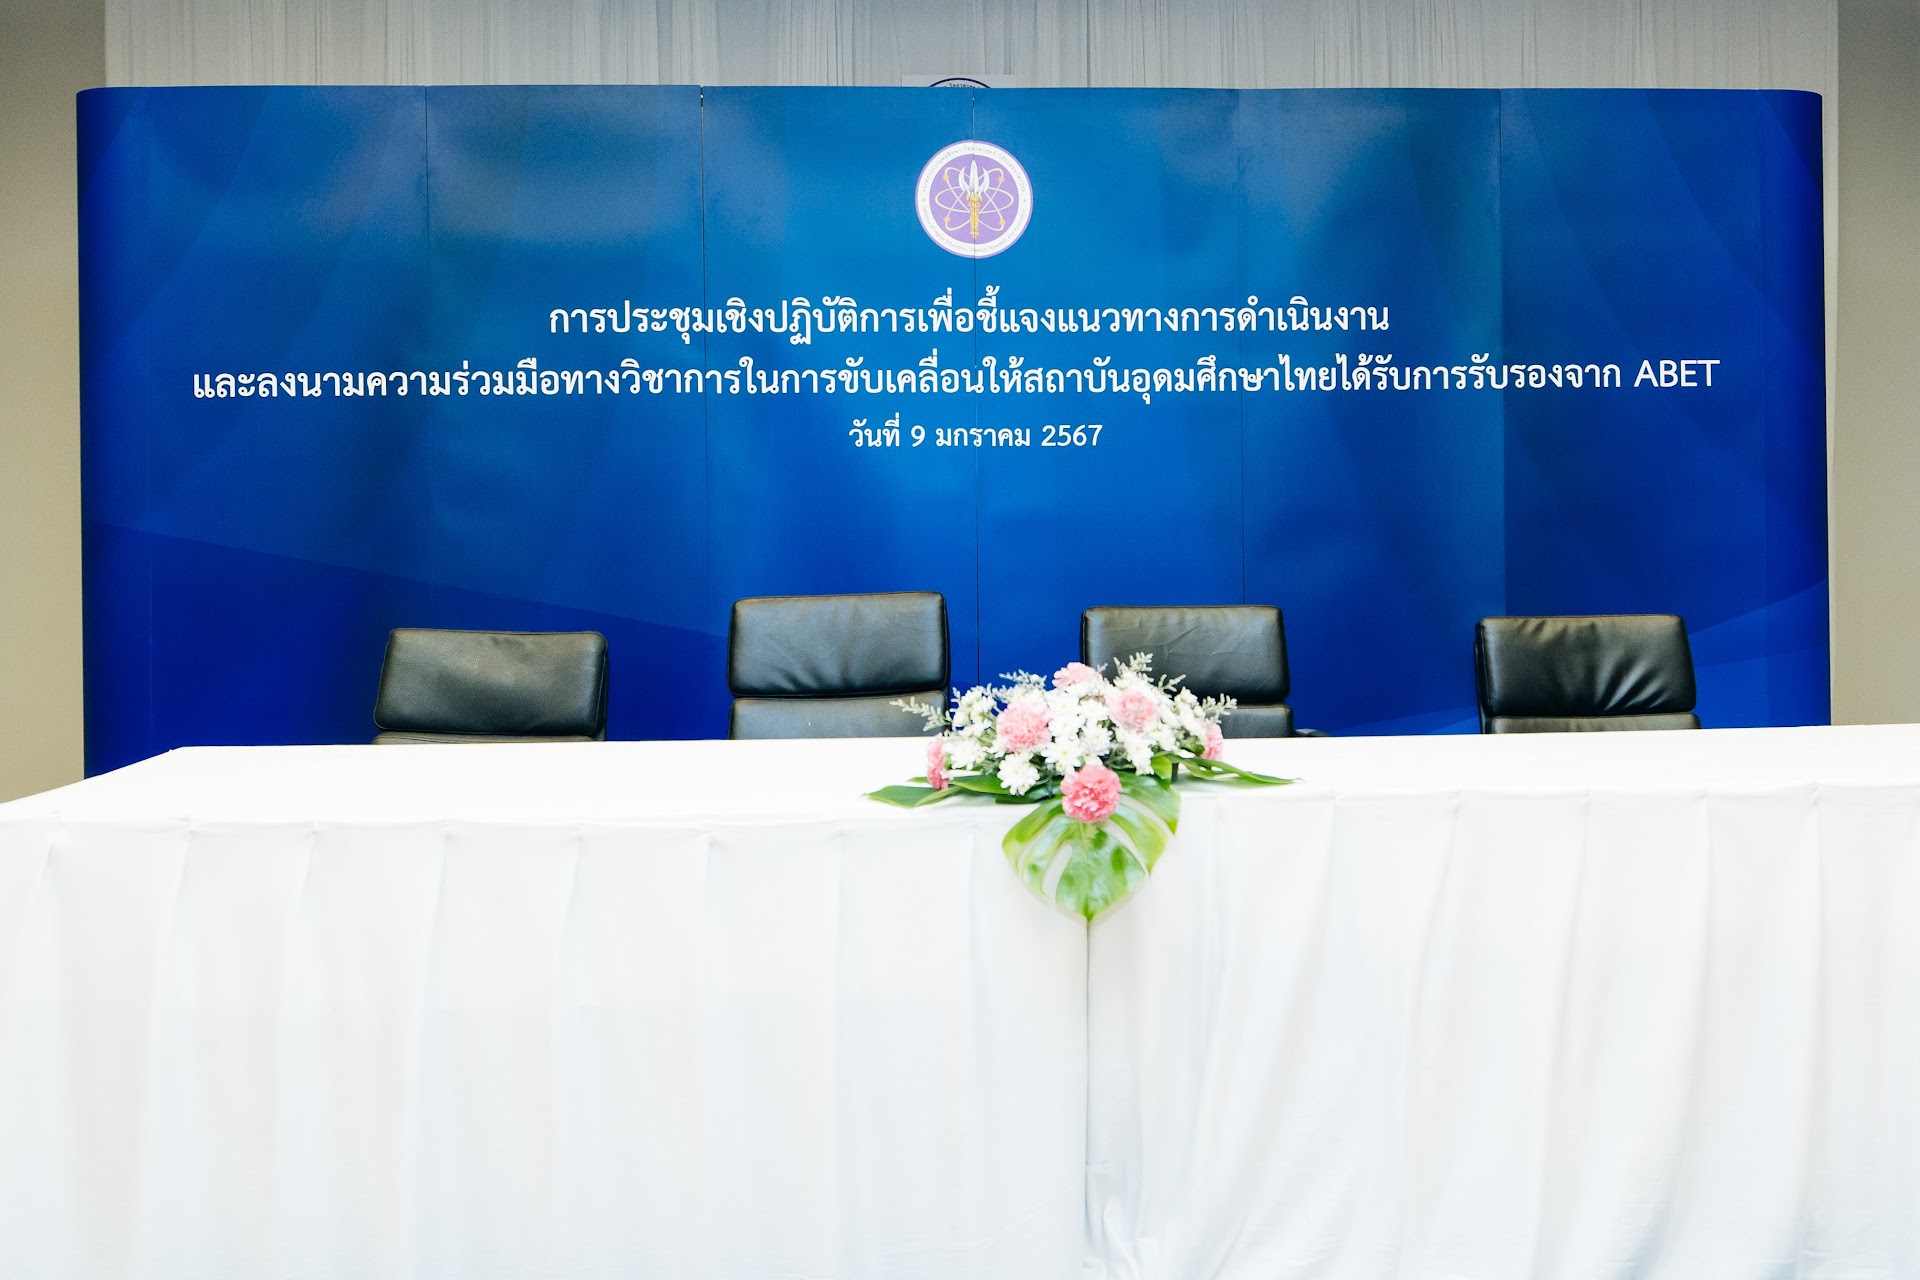 พิธีลงนามความร่วมมือทางวิชาการในการขับเคลื่อนให้สถาบันการอุดมศึกษาไทยได้รับการรับรองจาก ABAT